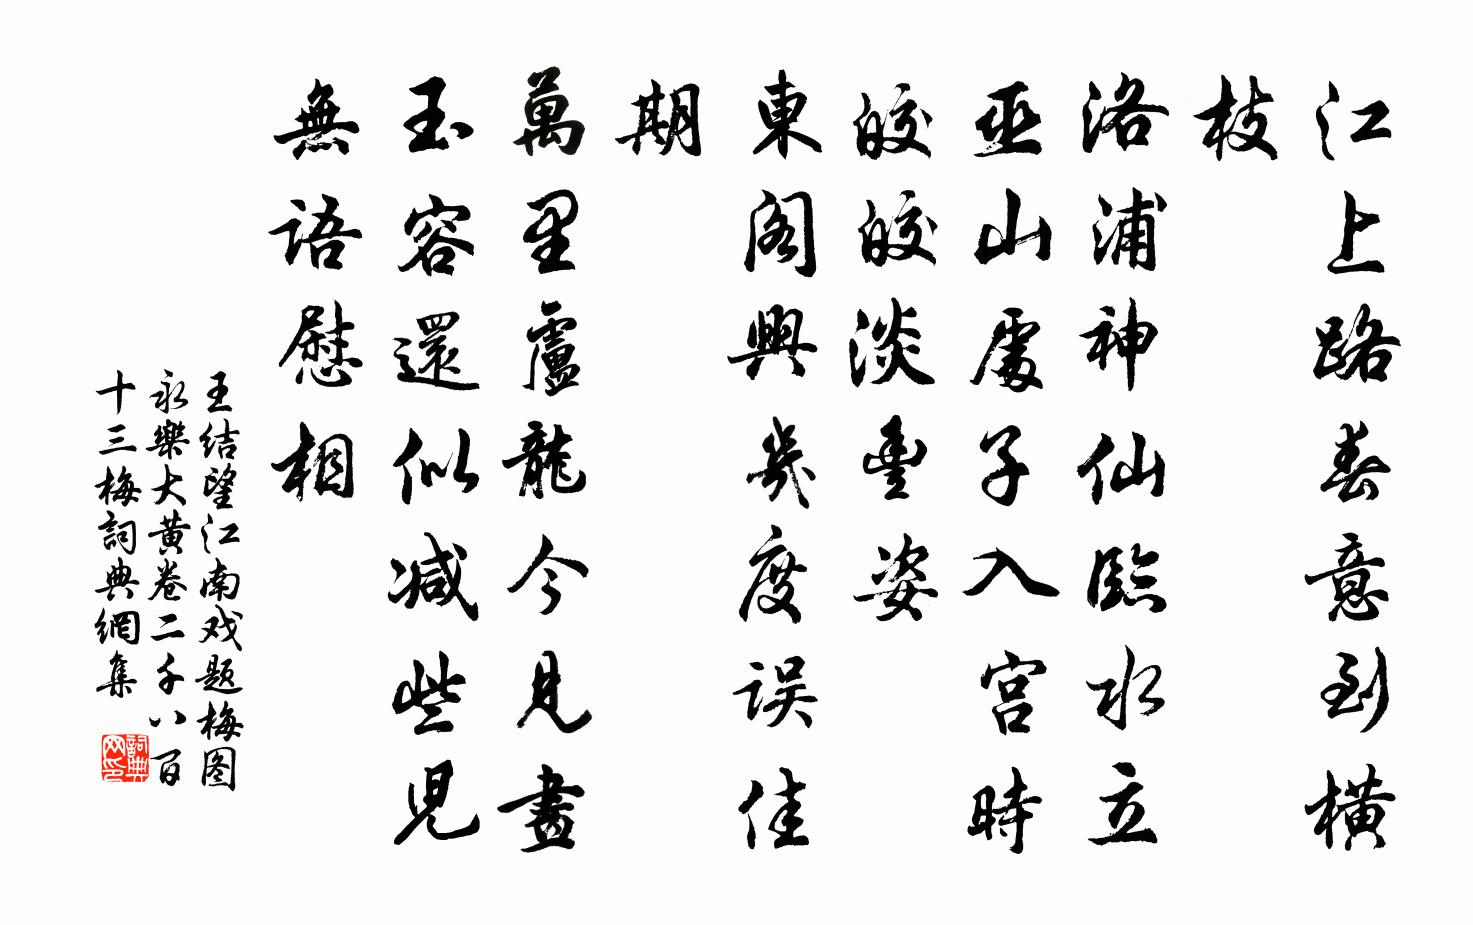 王结望江南 戏题梅图 永乐大黄卷二千八百十三梅书法作品欣赏